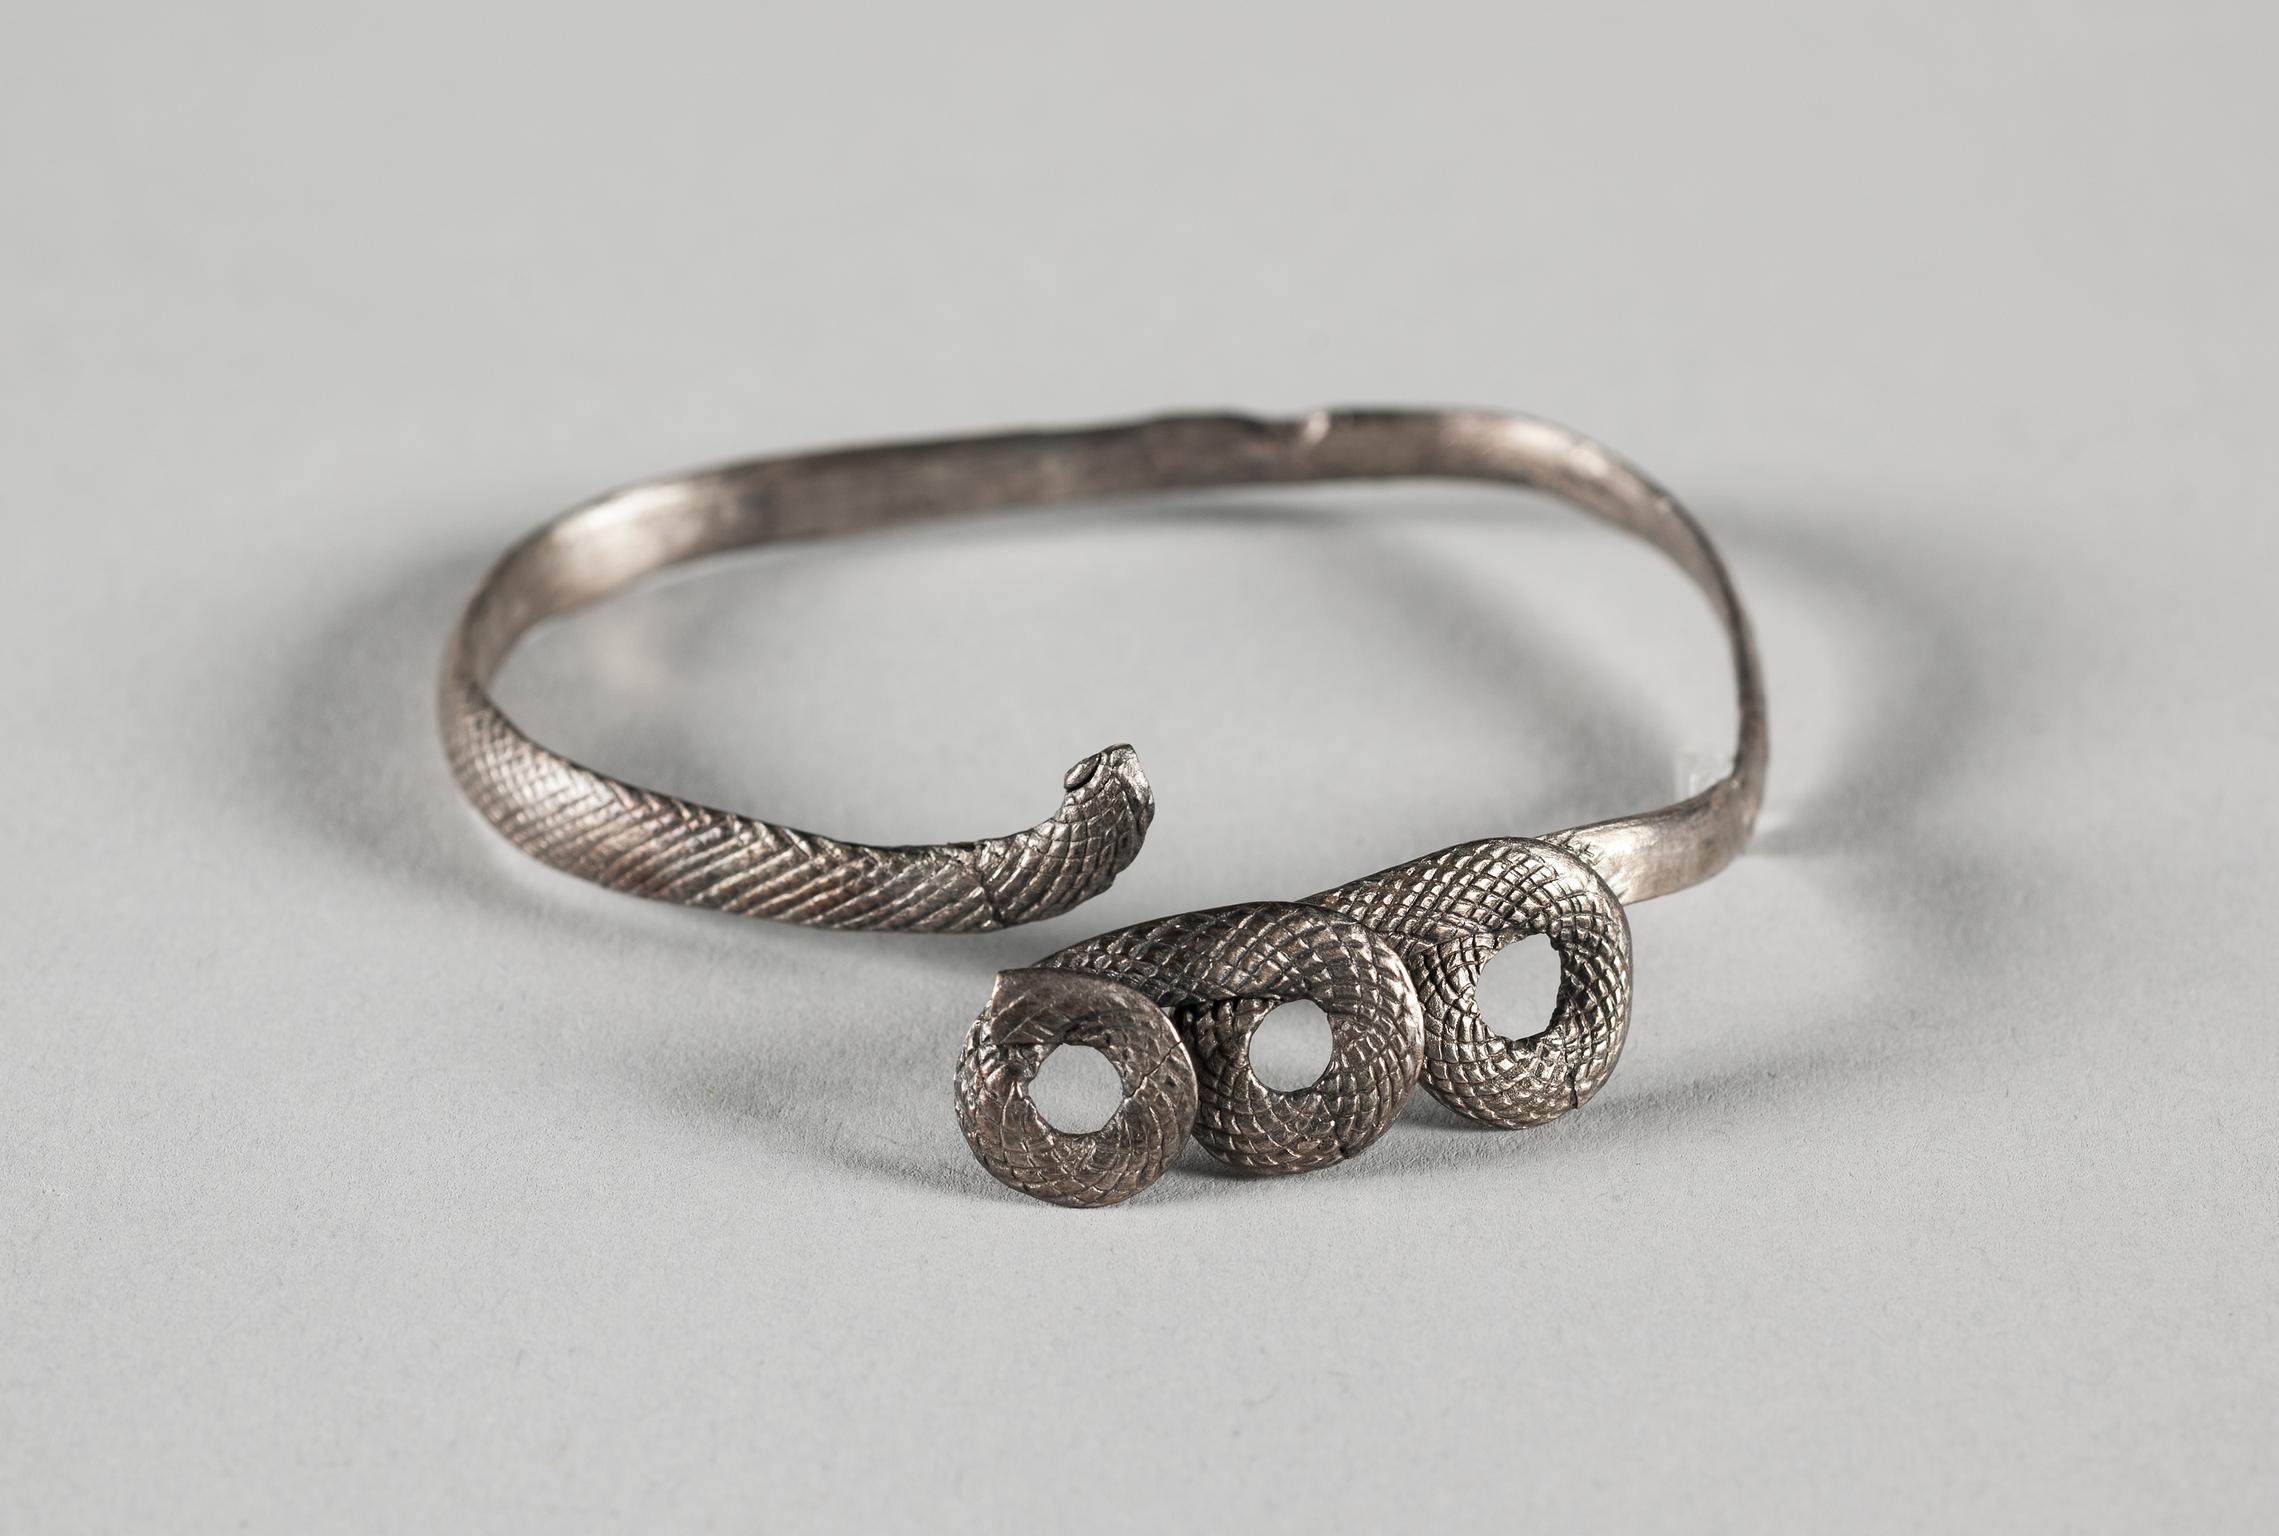 Roman silver bracelet